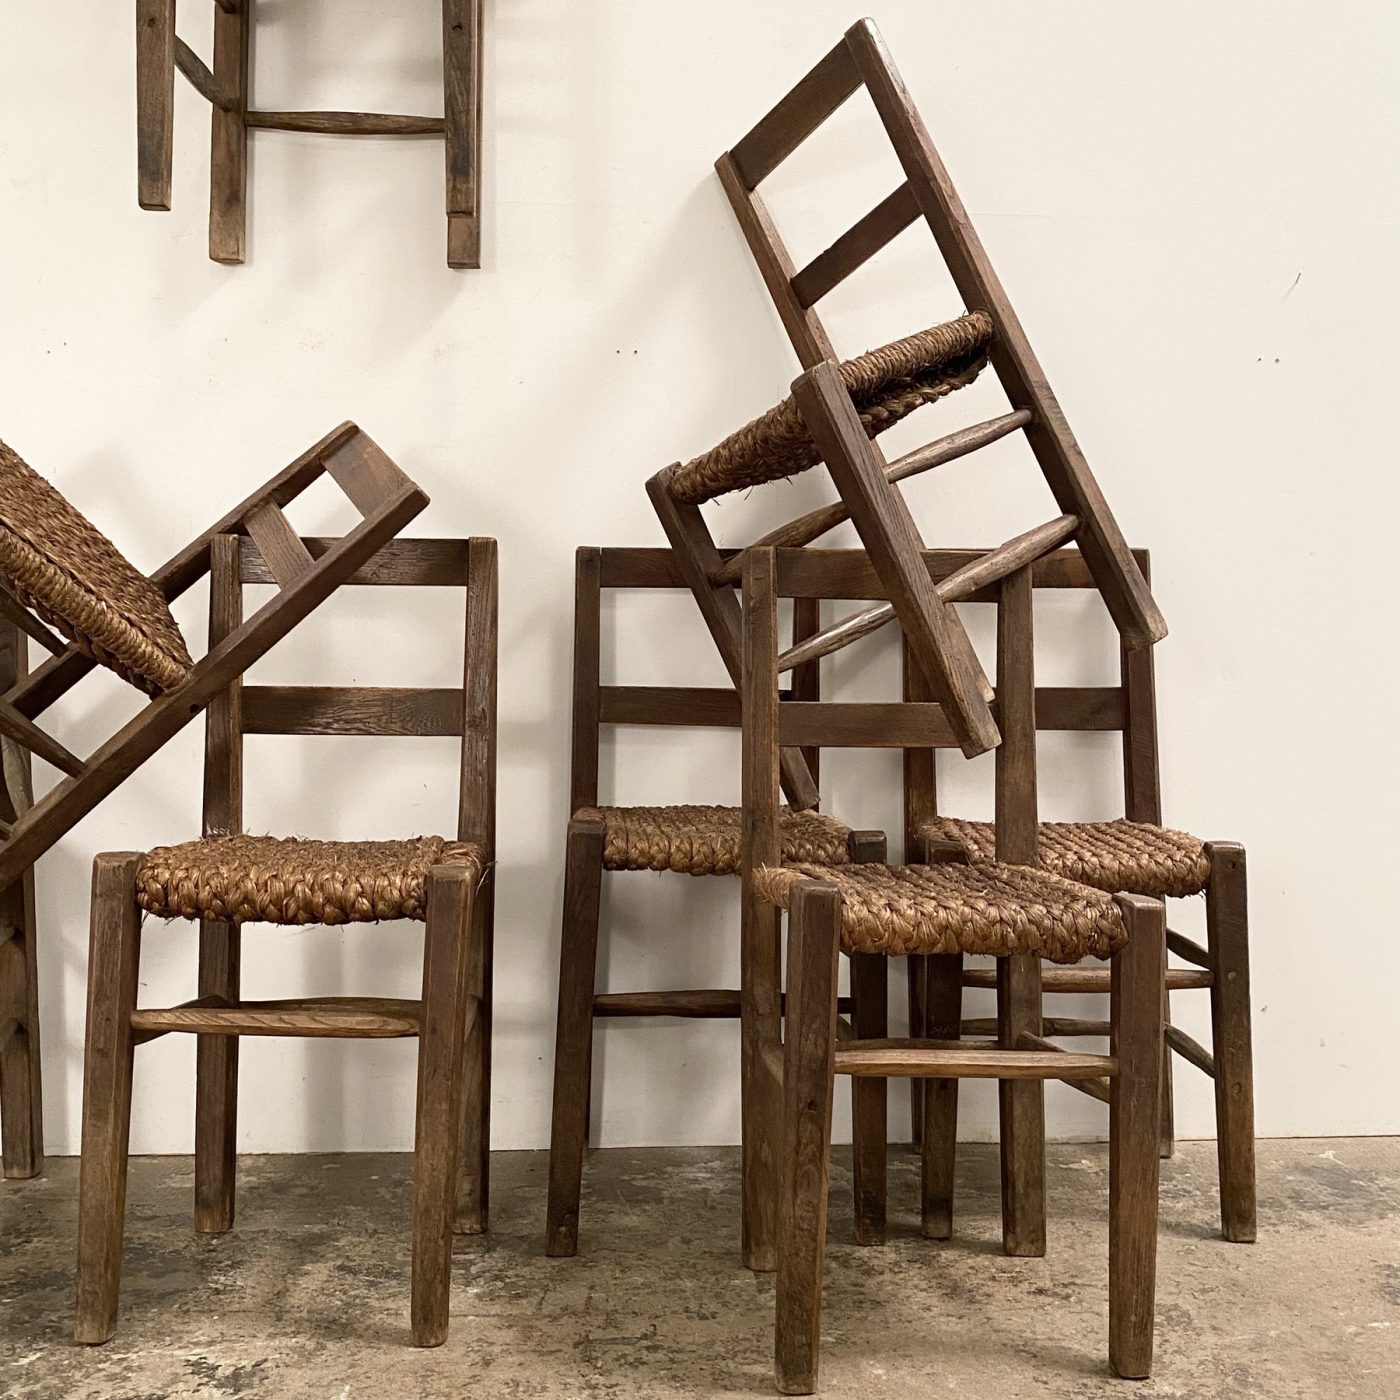 objet-vagabond-naive-chairs0012